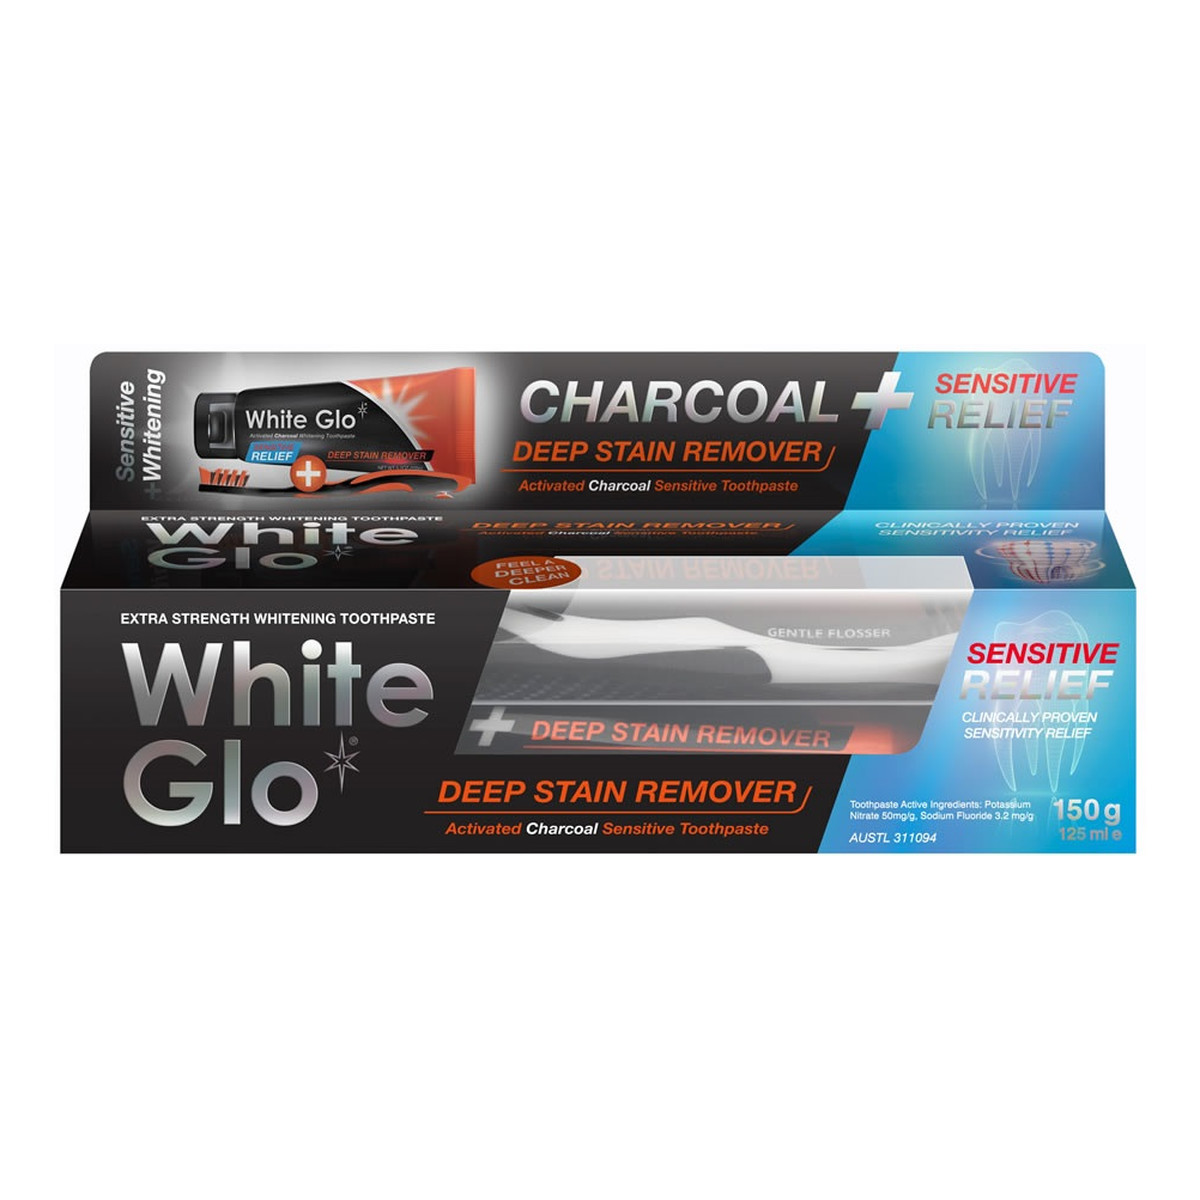 White Glo Charcoal deep stain remover sensitive relief wybielająca pasta do zębów z aktywnym węglem 125ml + szczoteczka